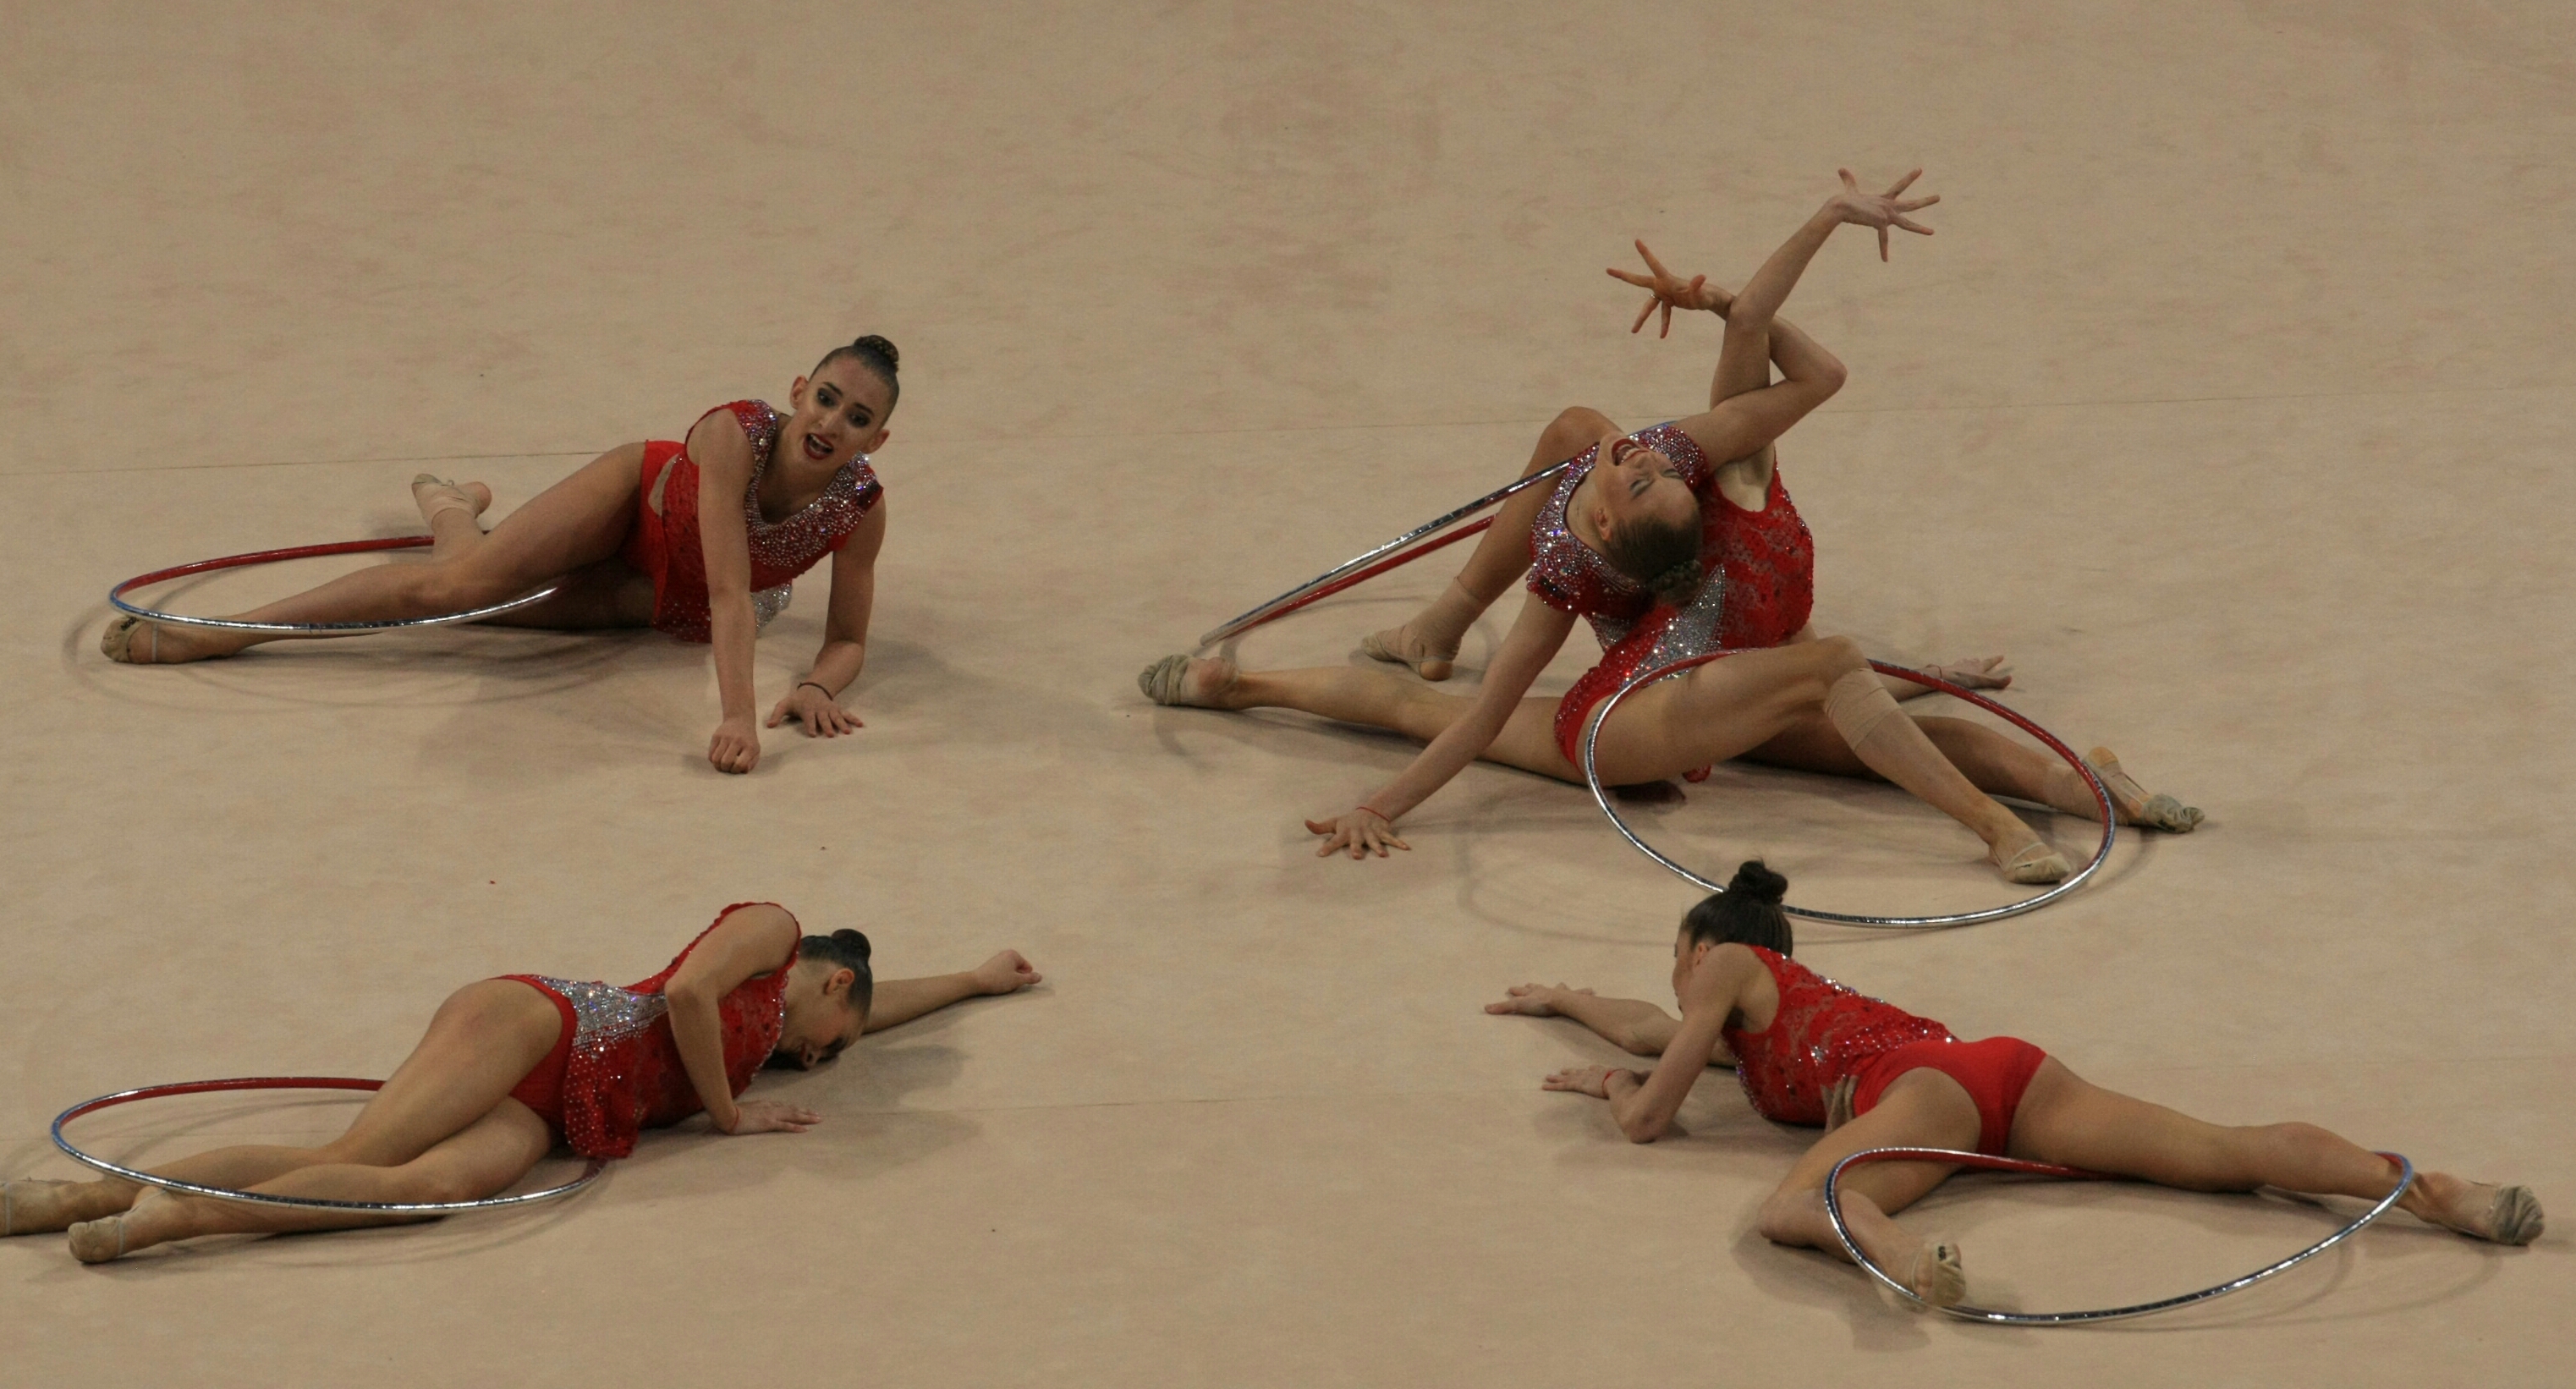 Националният ансамбъл по художествена гимнастика спечели златен медал във финала на пет обръча на Световната купа в София, след като отвя конкуренцията в дисциплината в зала "Арена Армеец".